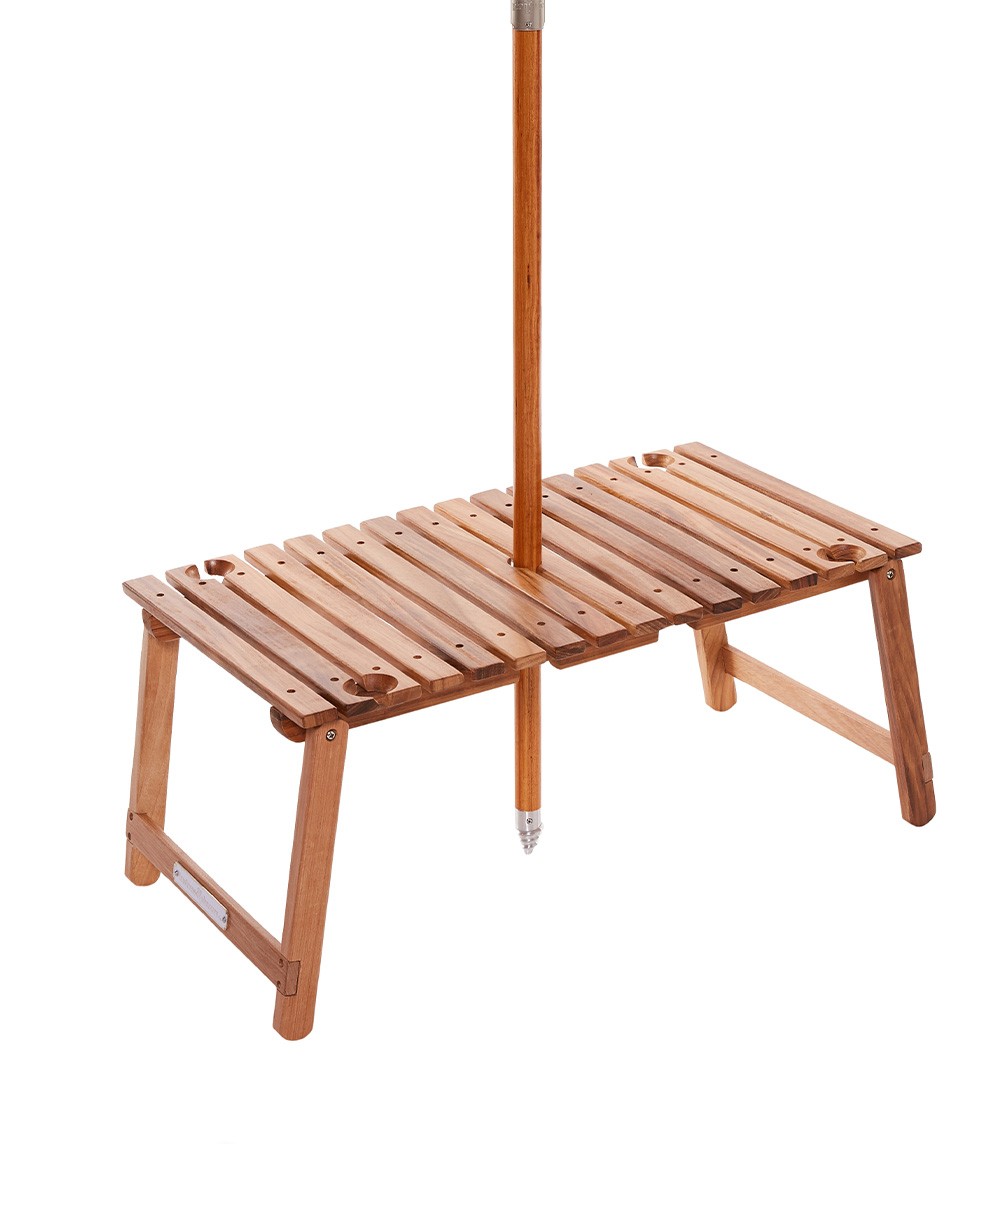 Hier abgebildet ist ein Moodbild des Picknick Tables  von Business & Pleasure Co. – im RAUM concept store